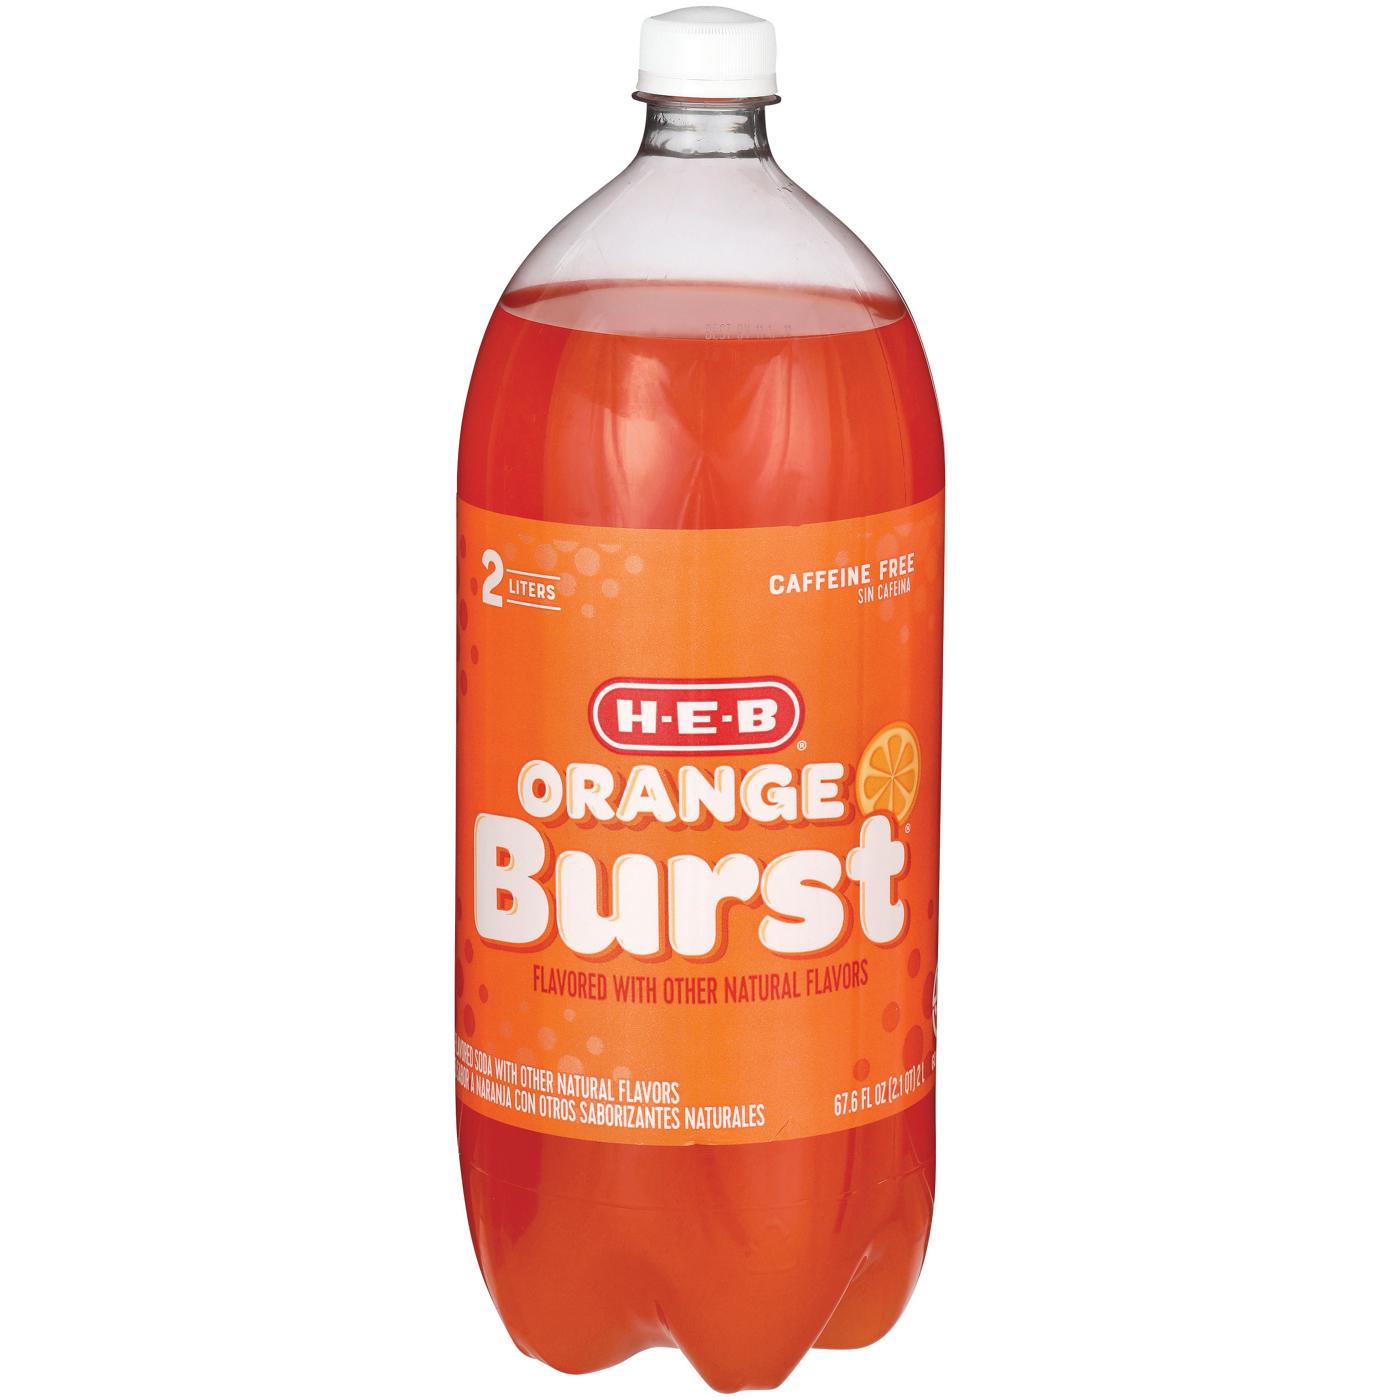 H-E-B Orange Burst Soda; image 1 of 2